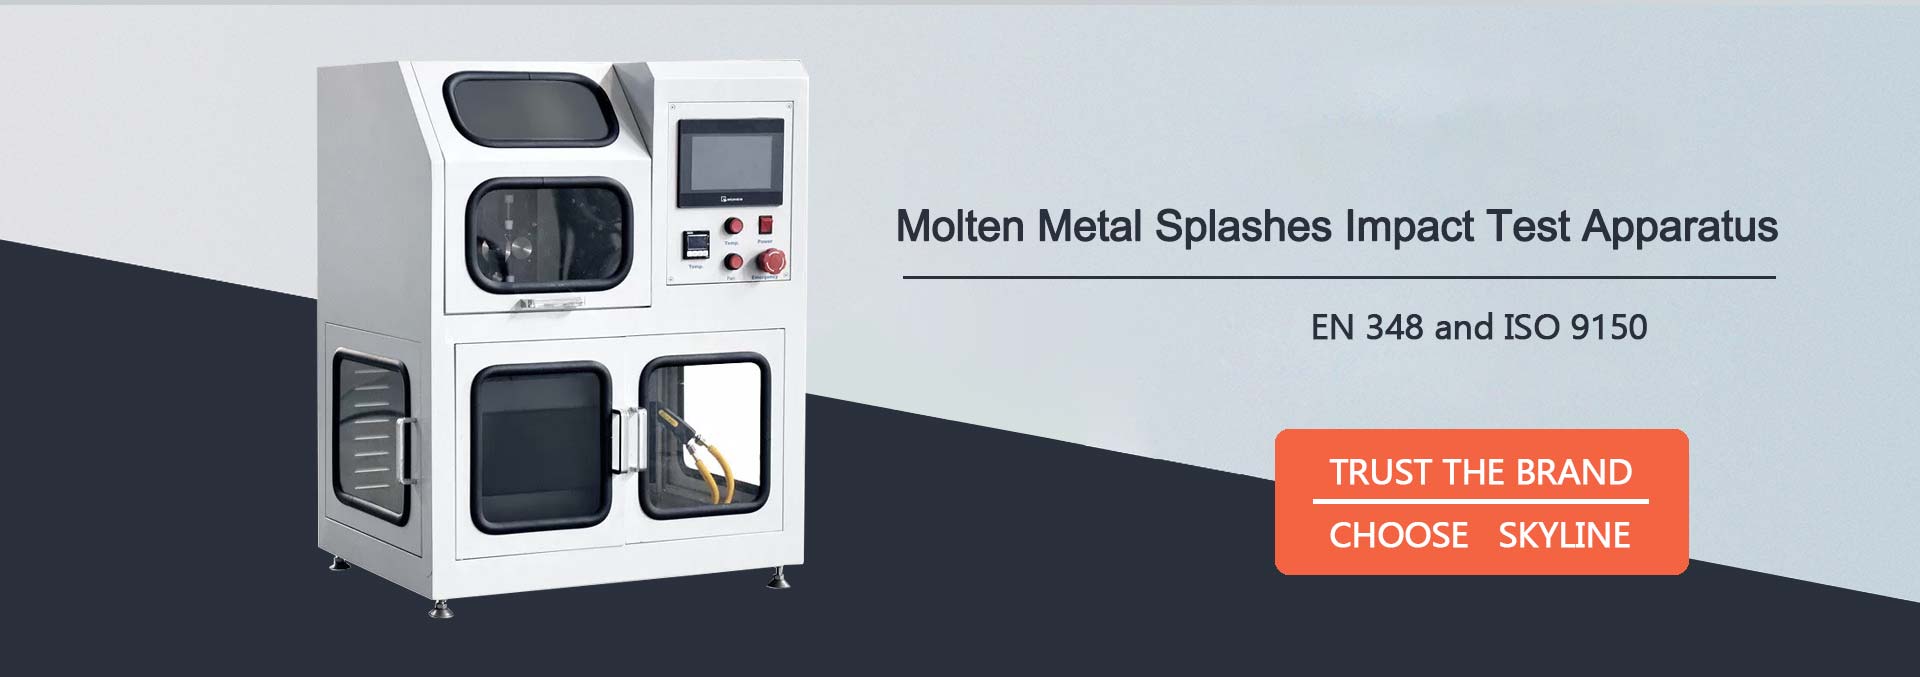 Molten Metal Splashes Impact Test Apparatus